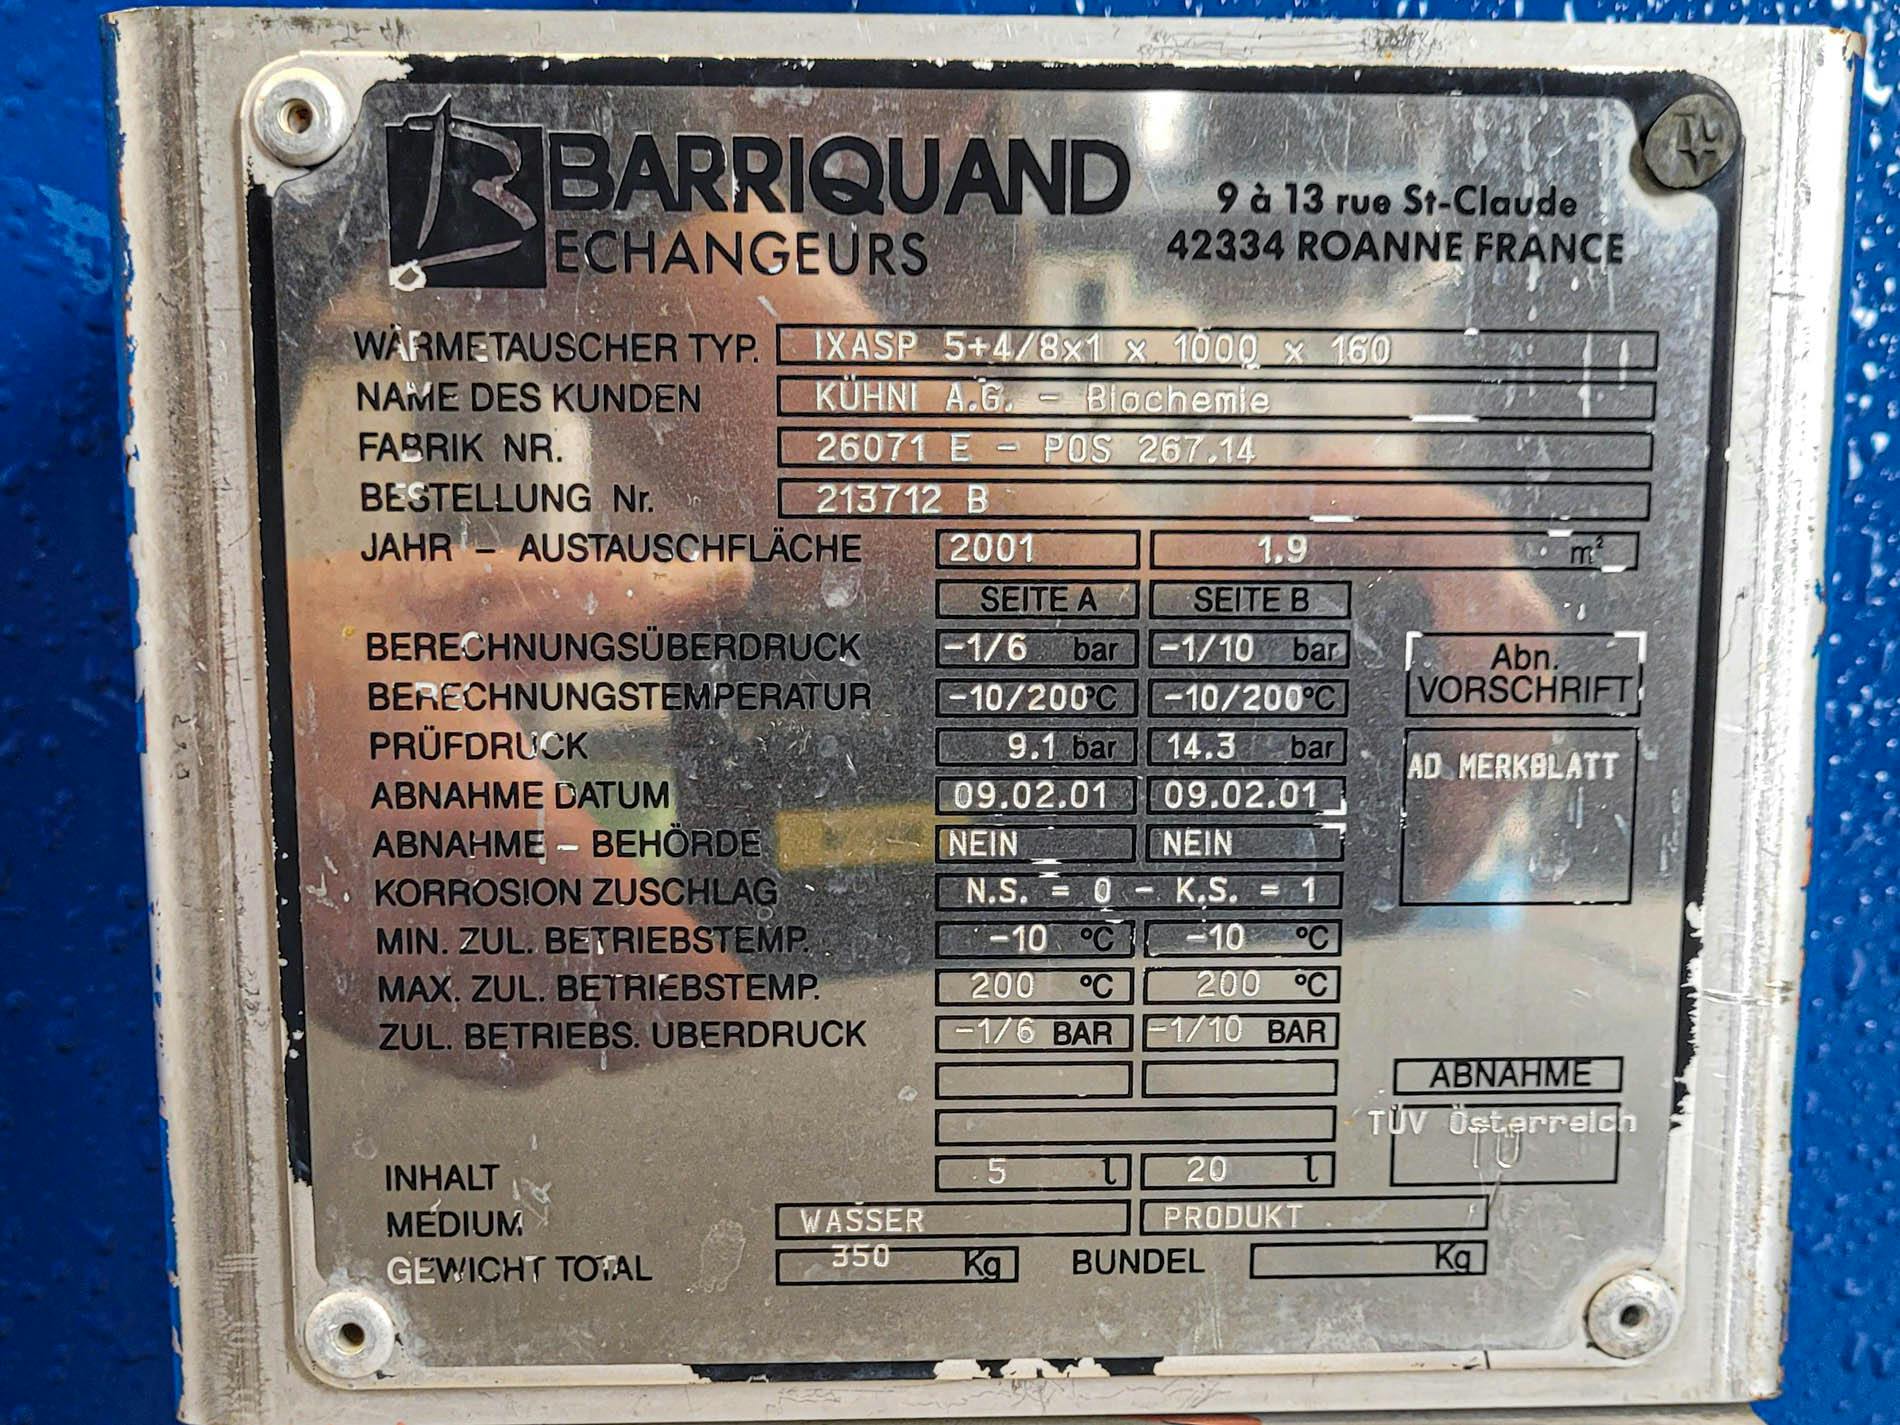 Barriquand IXAP 5+4/8x1 x 1000 x 160 - 1,9 m² - Płytowe wymiennik ciepła - image 9